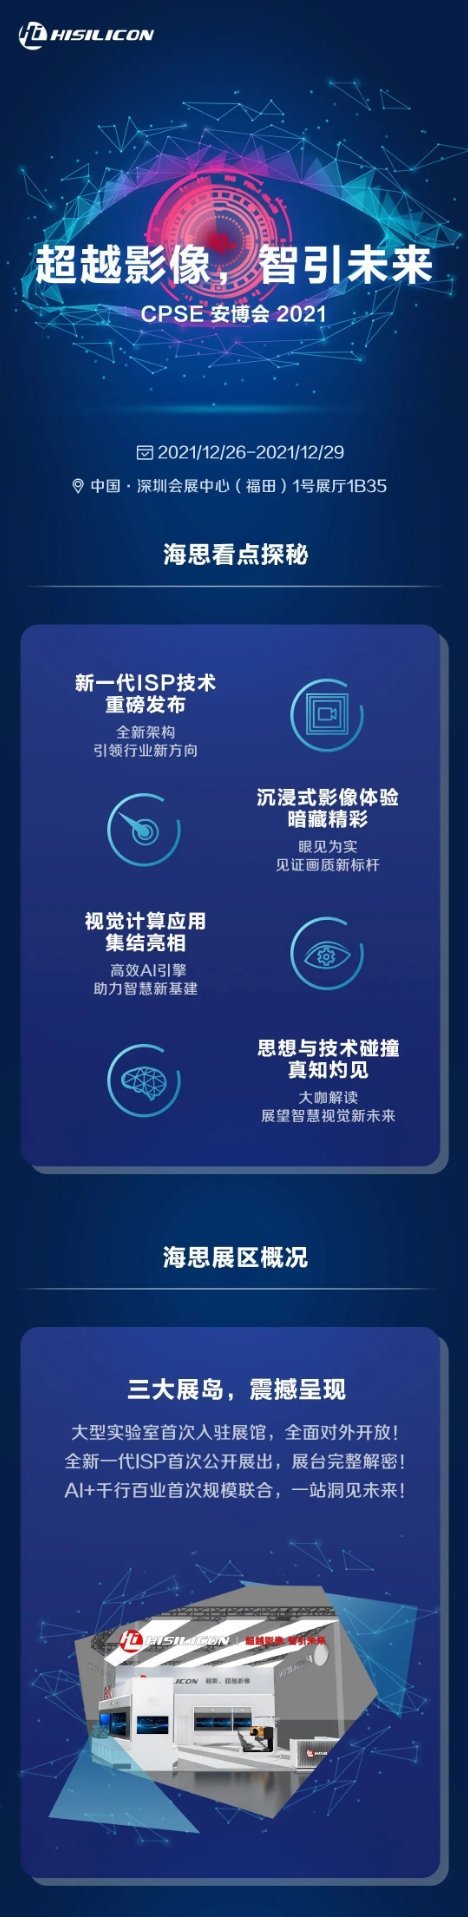 Une possible affiche de HiSilicon pour la prochaine expo. (Source : HuaweiFans via Weibo)